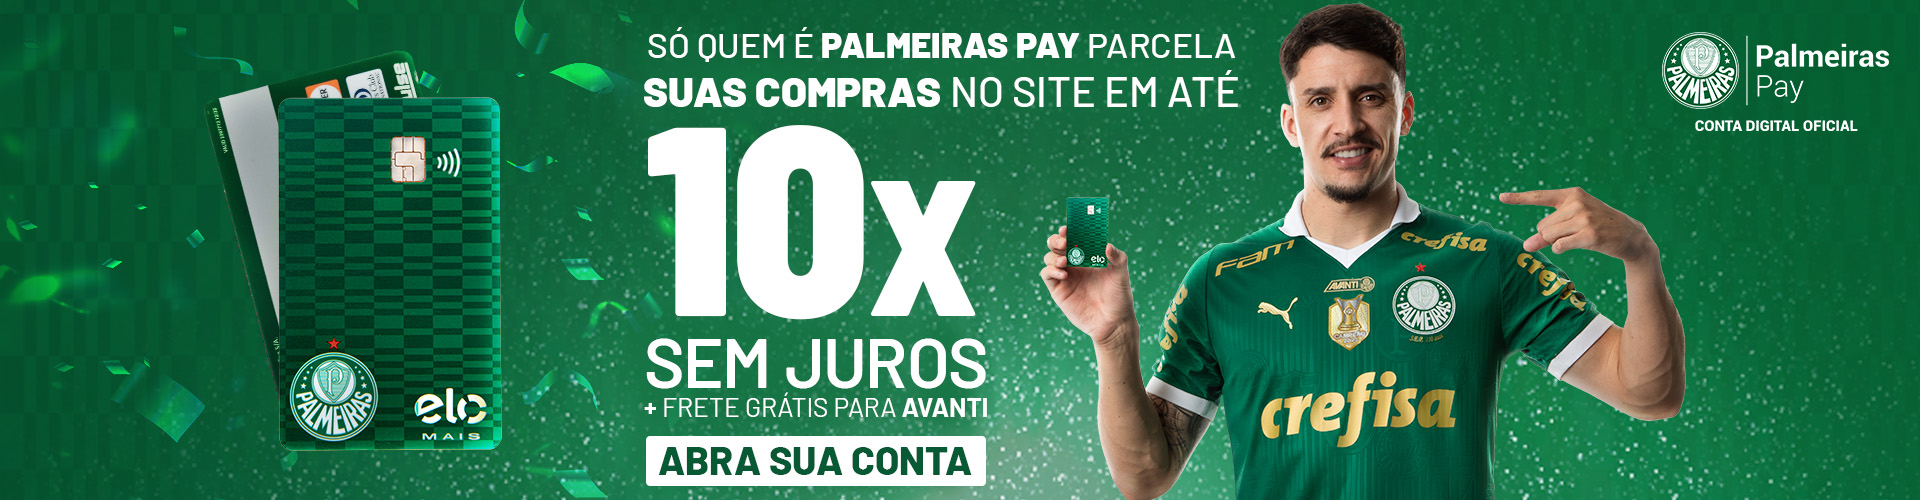 Palmeiras Pay 13.06